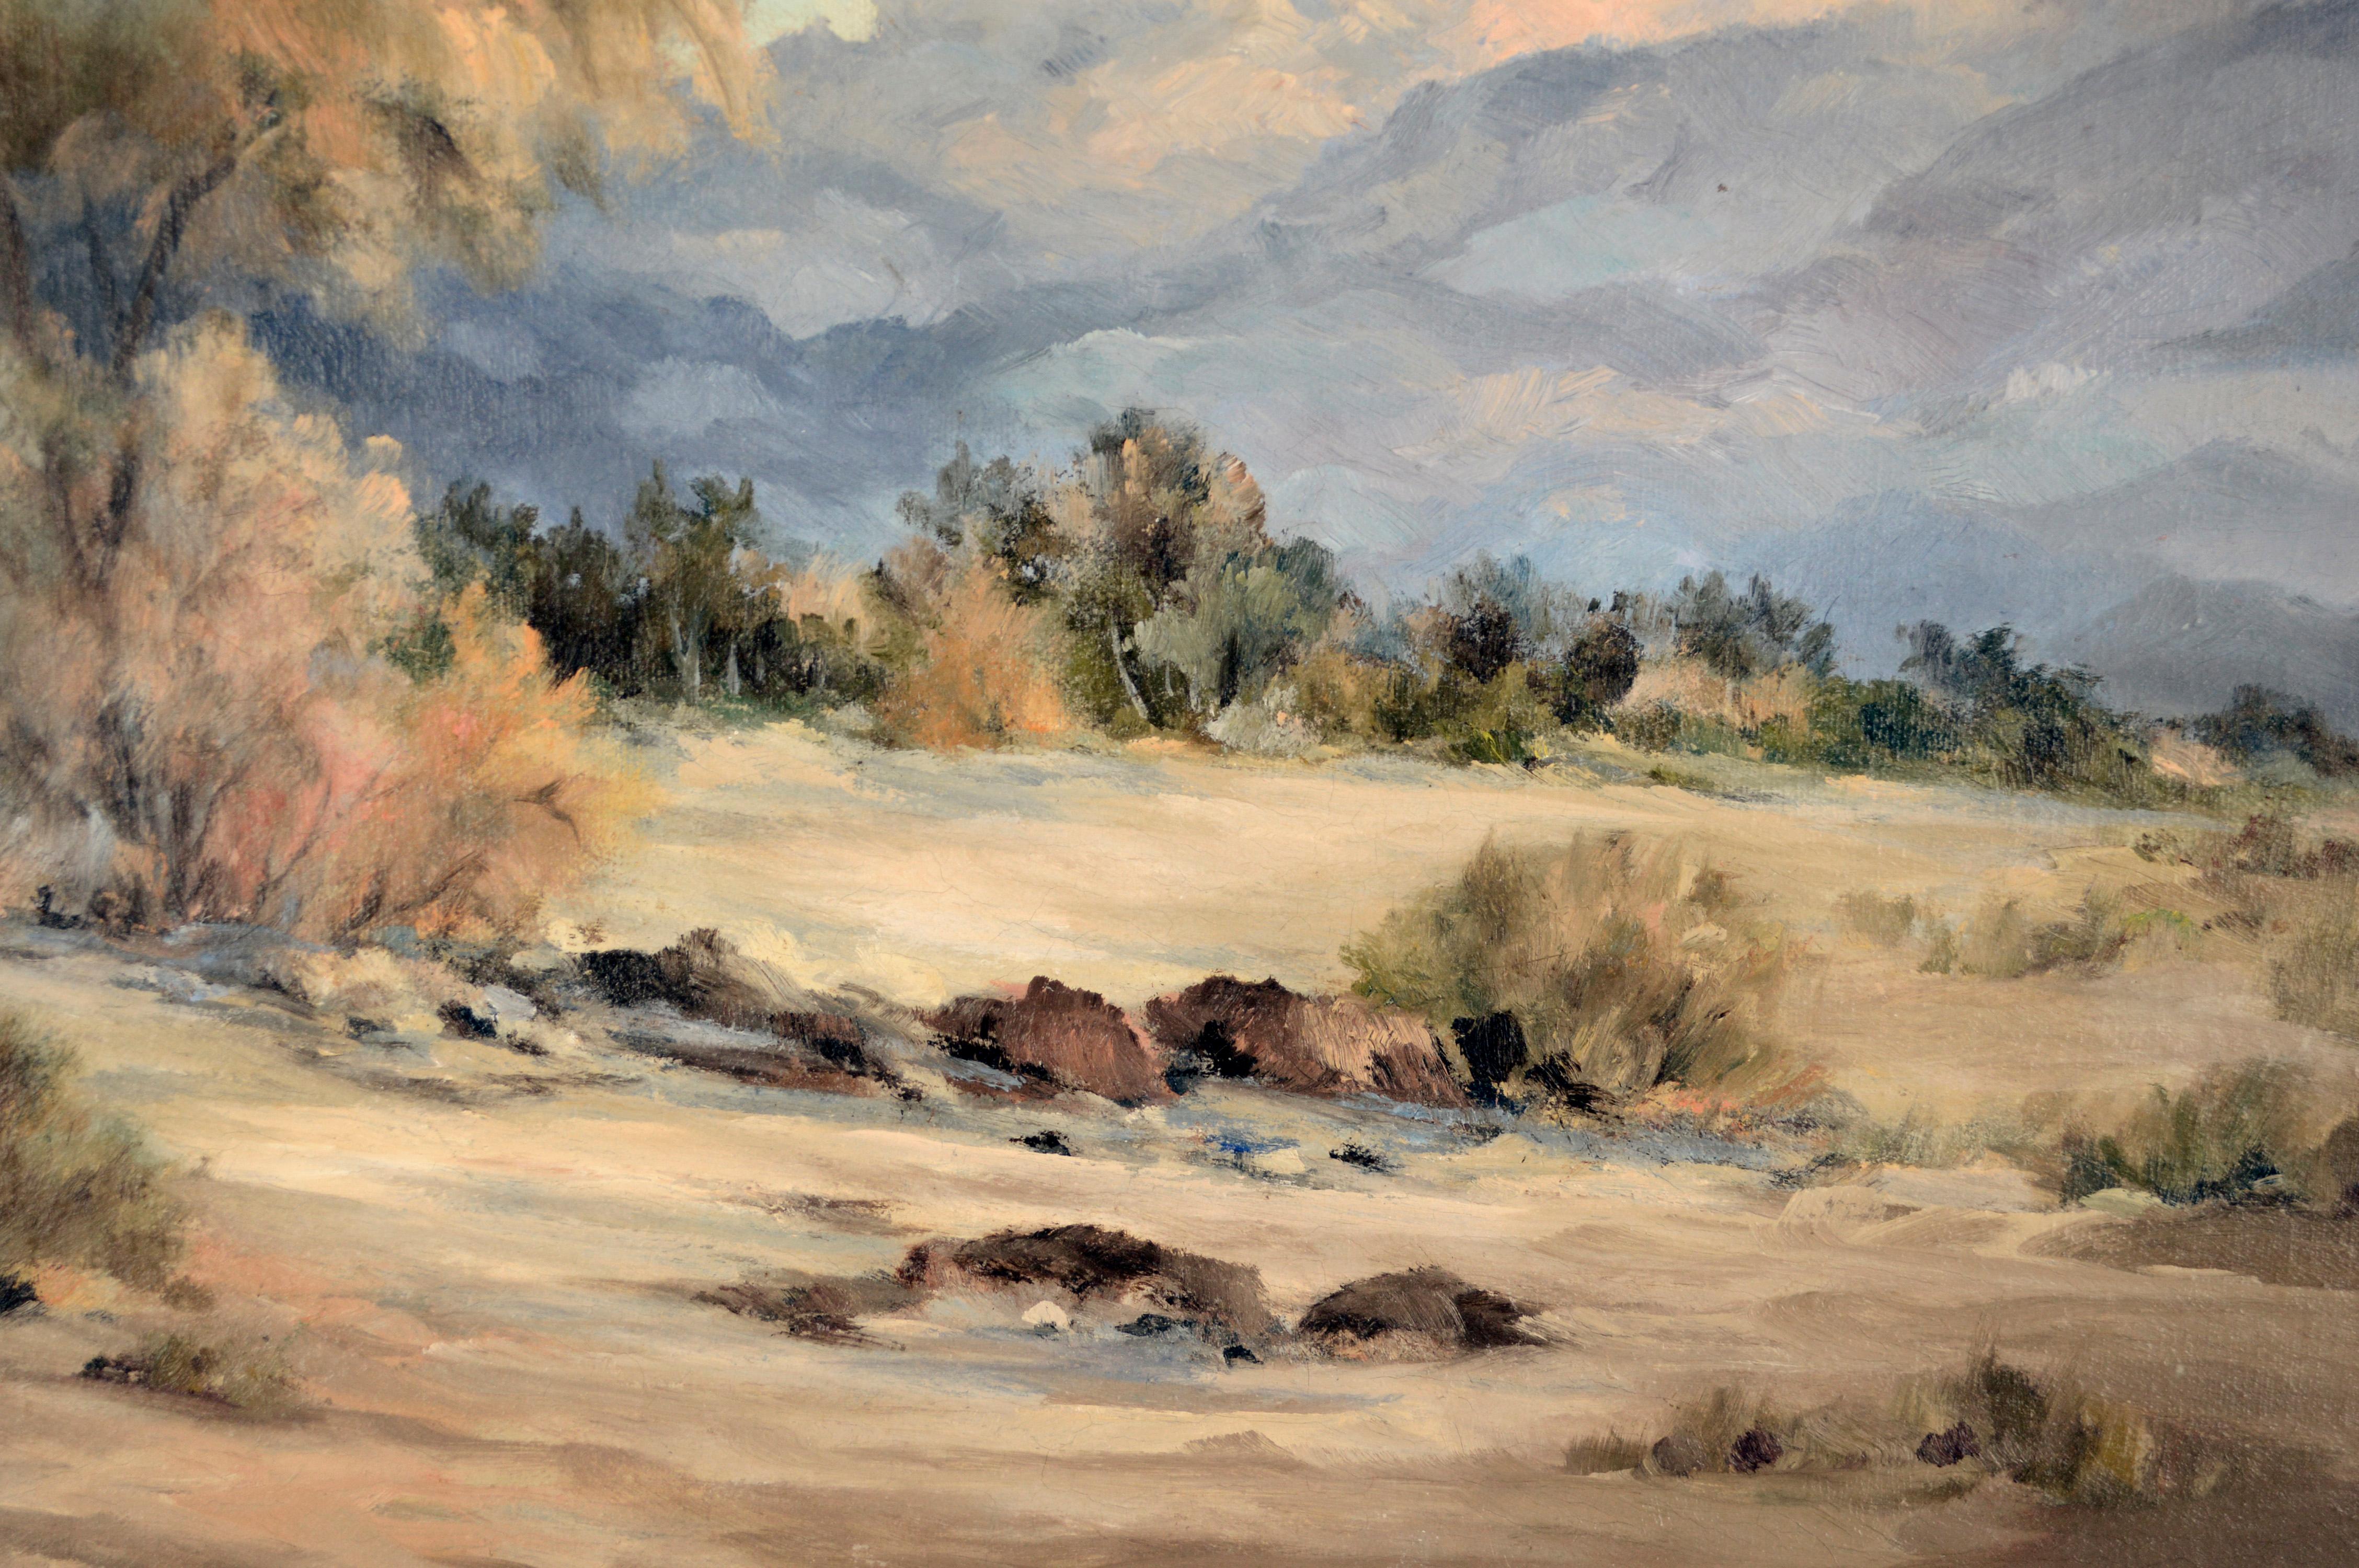 Rauchbaum Südkalifornien-Hohe Wüste 1966
Detaillierte Wüstenszene auf Leinen der südkalifornischen Plein-Aire-Malerin Dorothy L. Wolters (Amerikanerin, Anfang 20. Jh.) 

Bild 16 